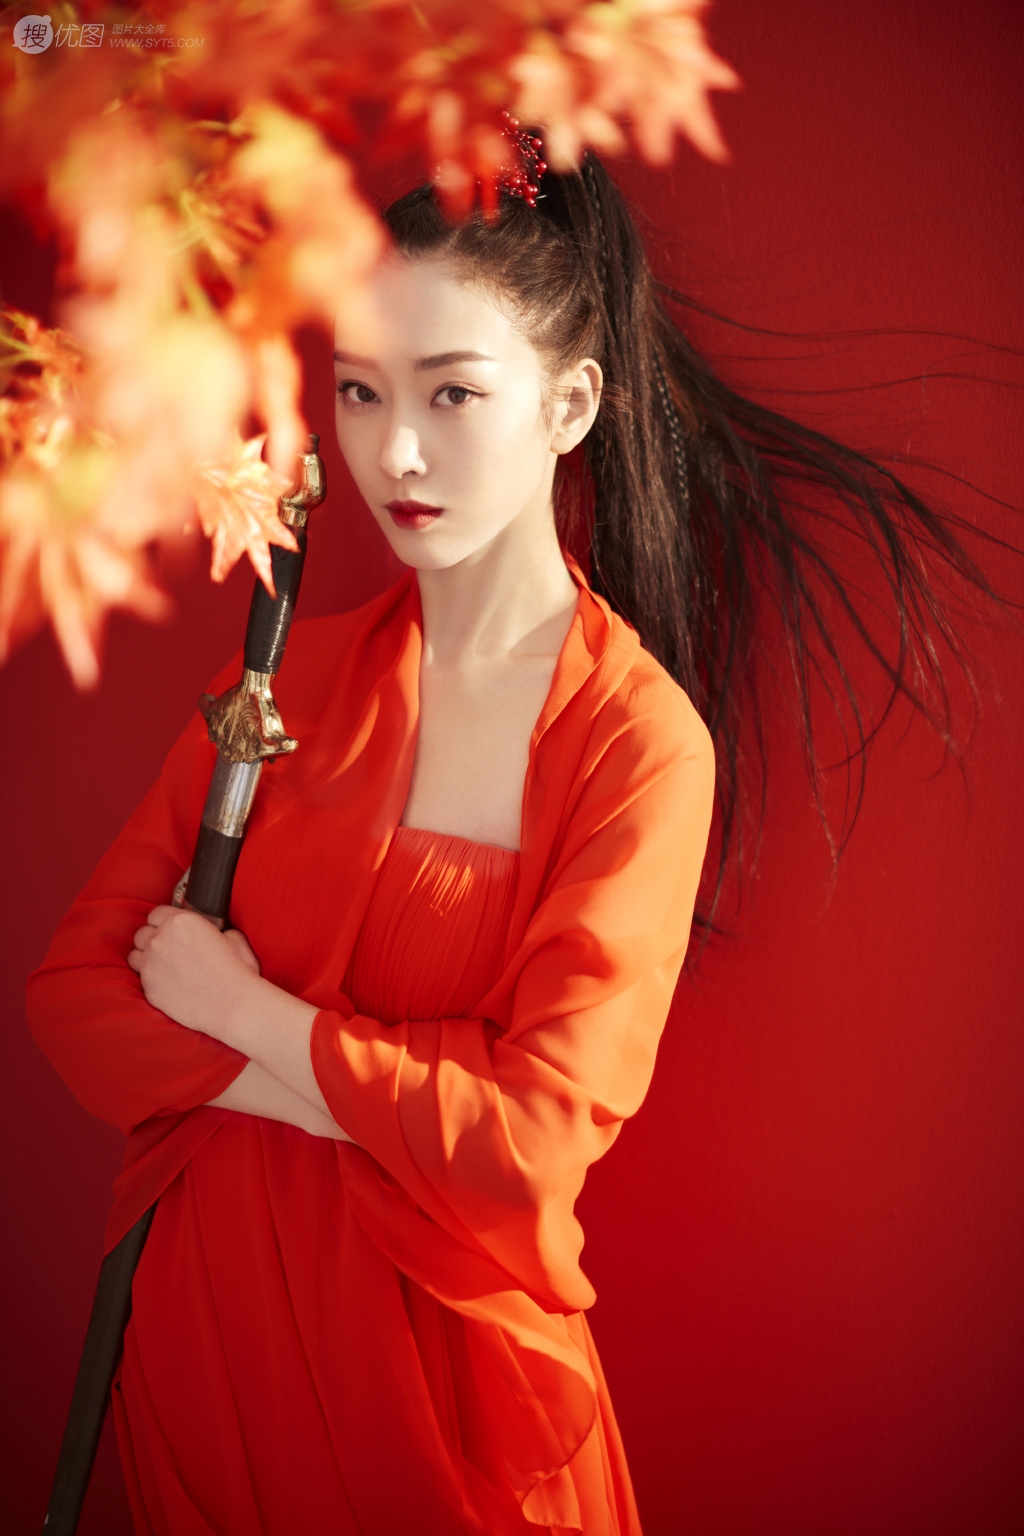 美女宣璐鲜艳红色古装打扮枫叶树下论剑写真美图图片